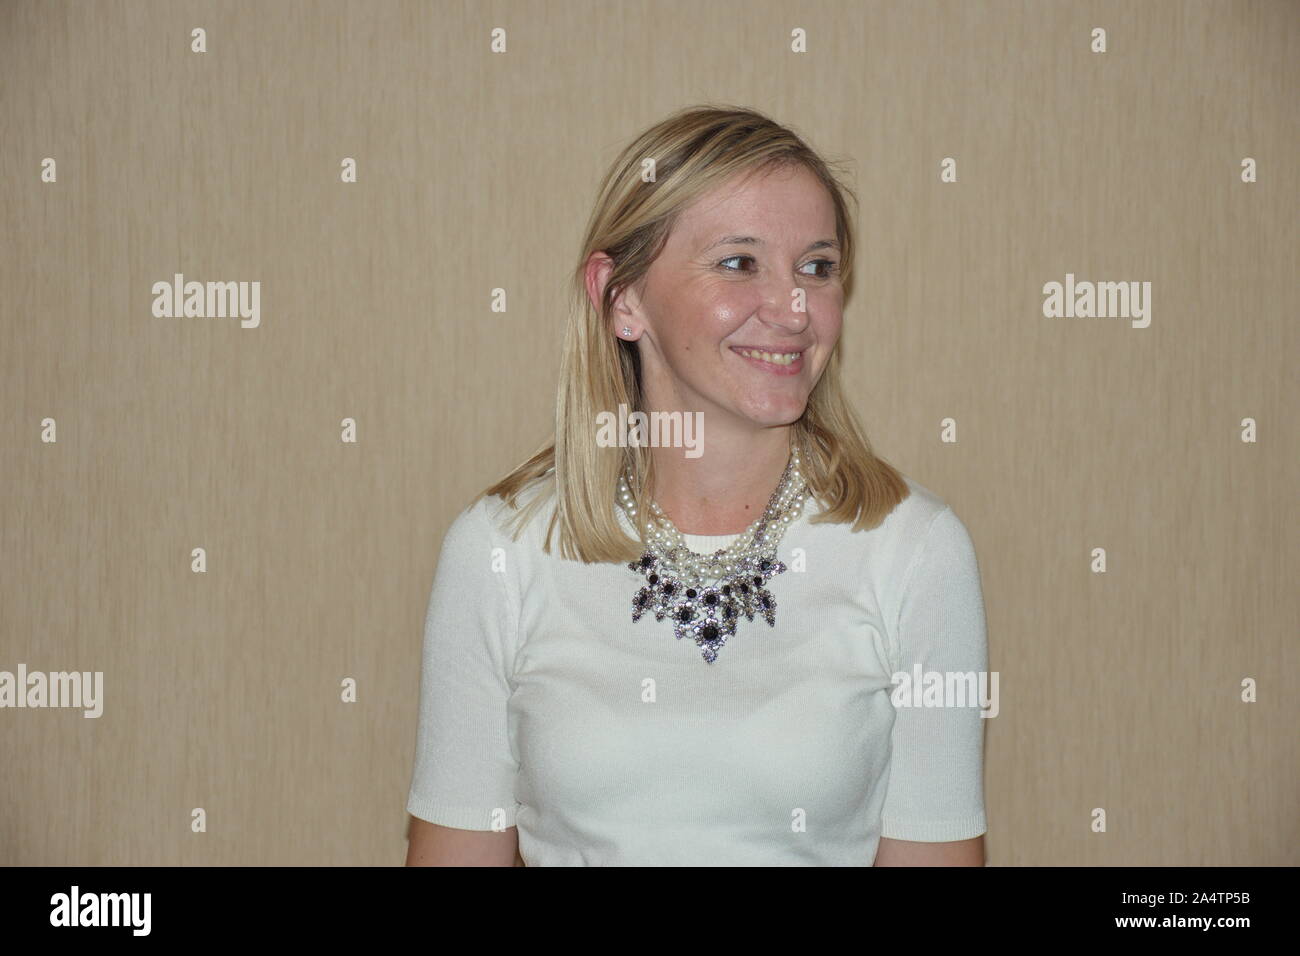 Portrait de la jeune femme blonde contre le fond monochrome Banque D'Images